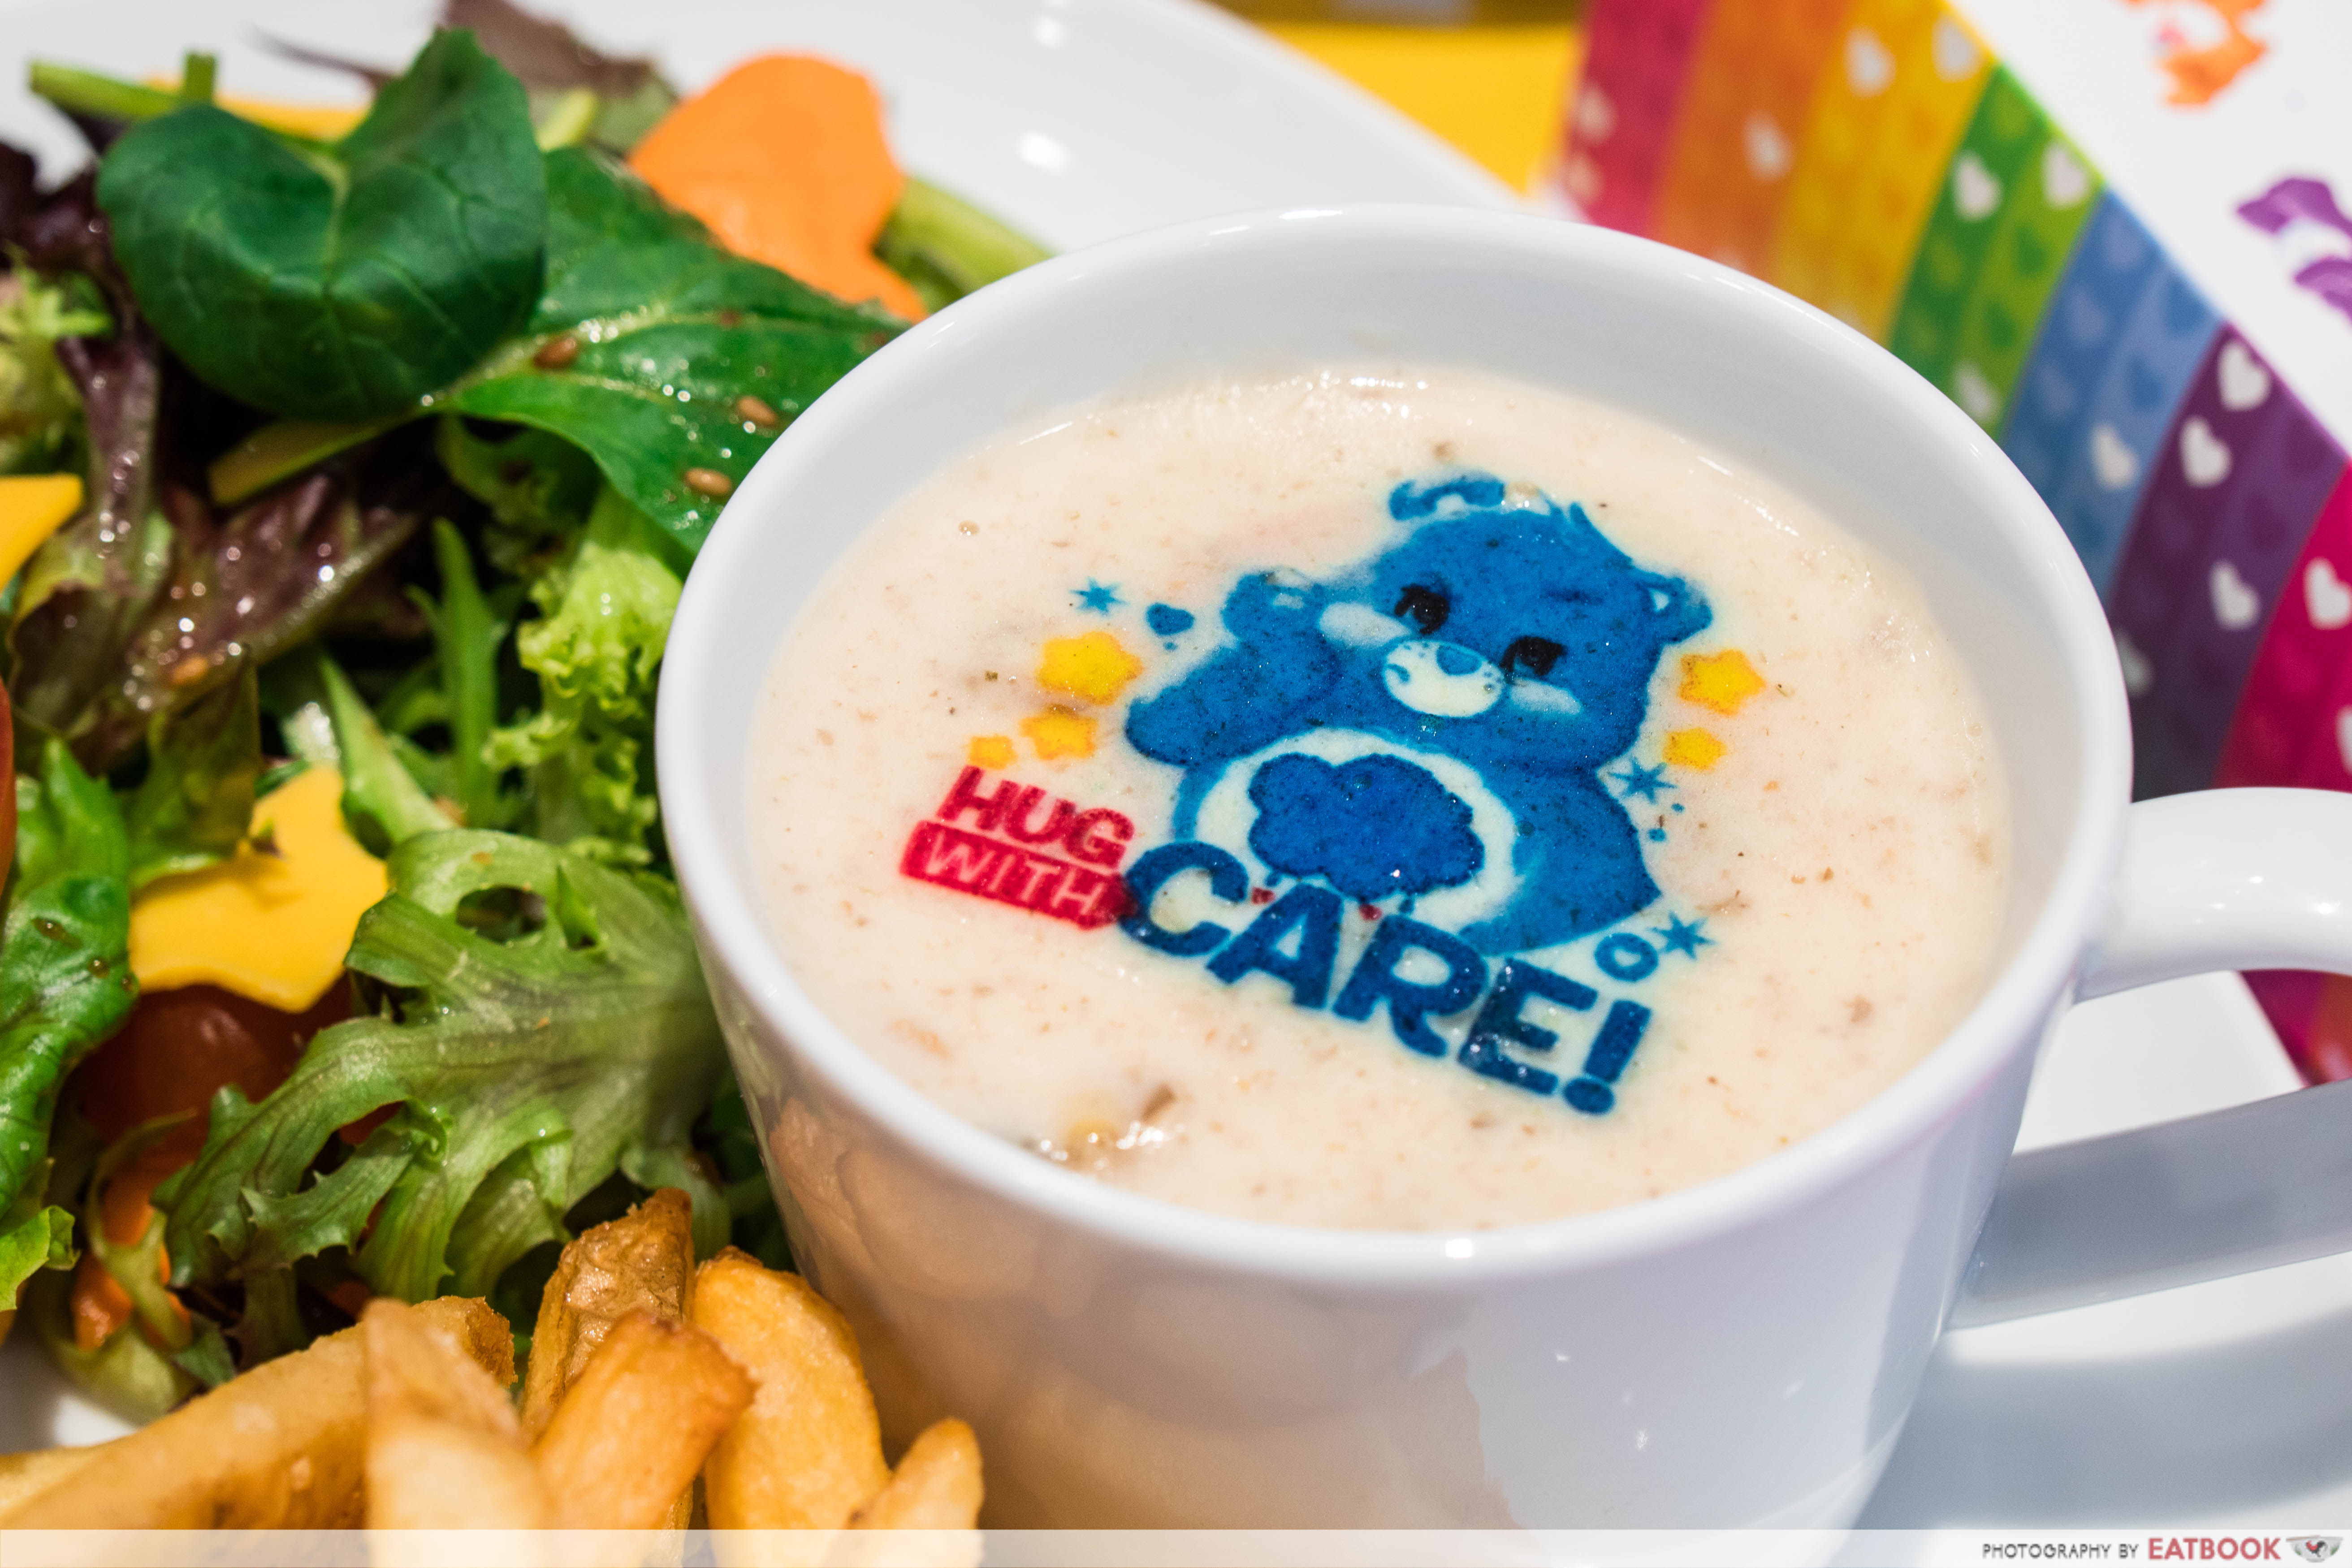 Care Bears Cafe - mushroom soup